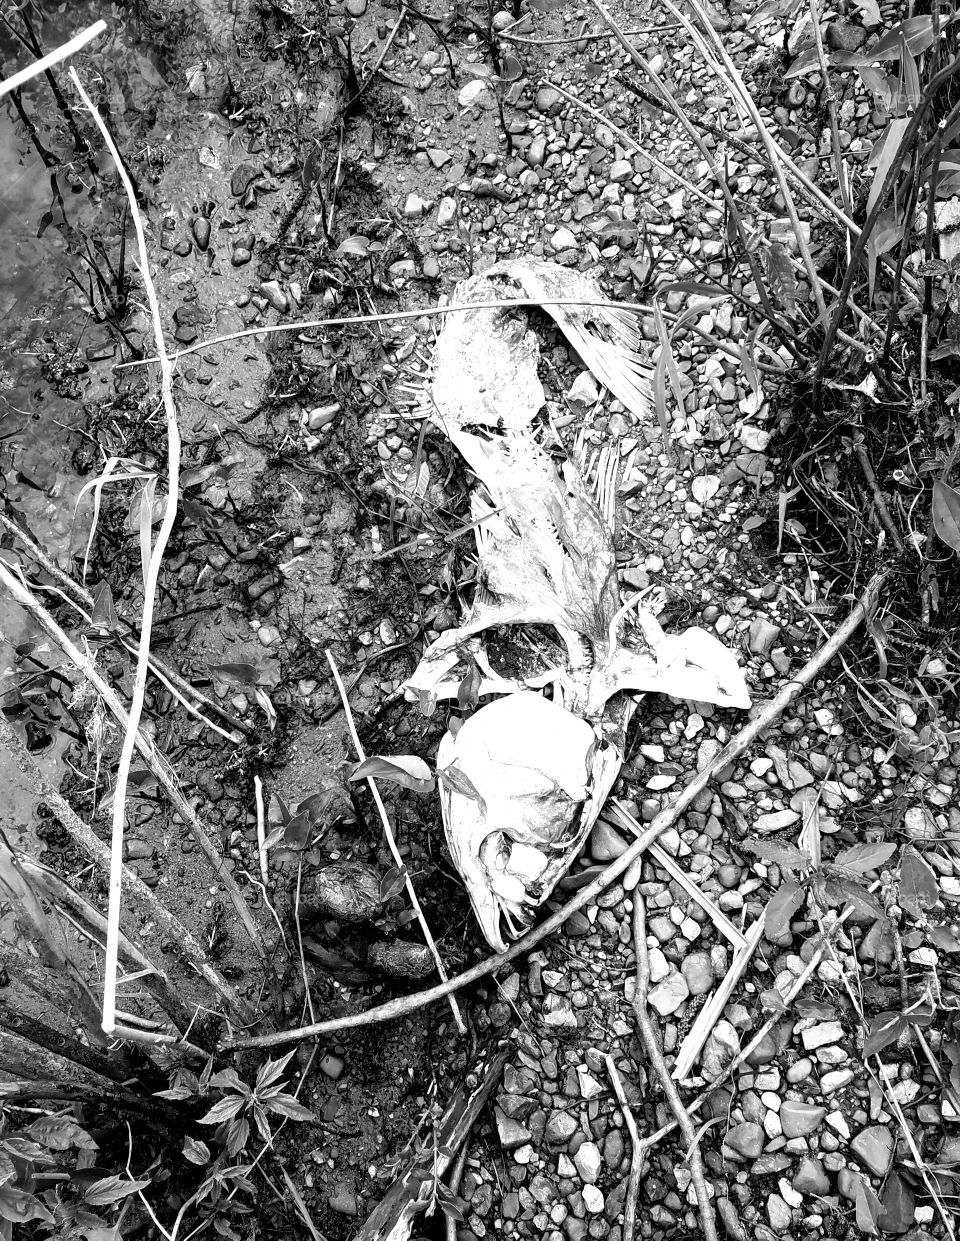 big fish skeleton at Reelfoot Lake